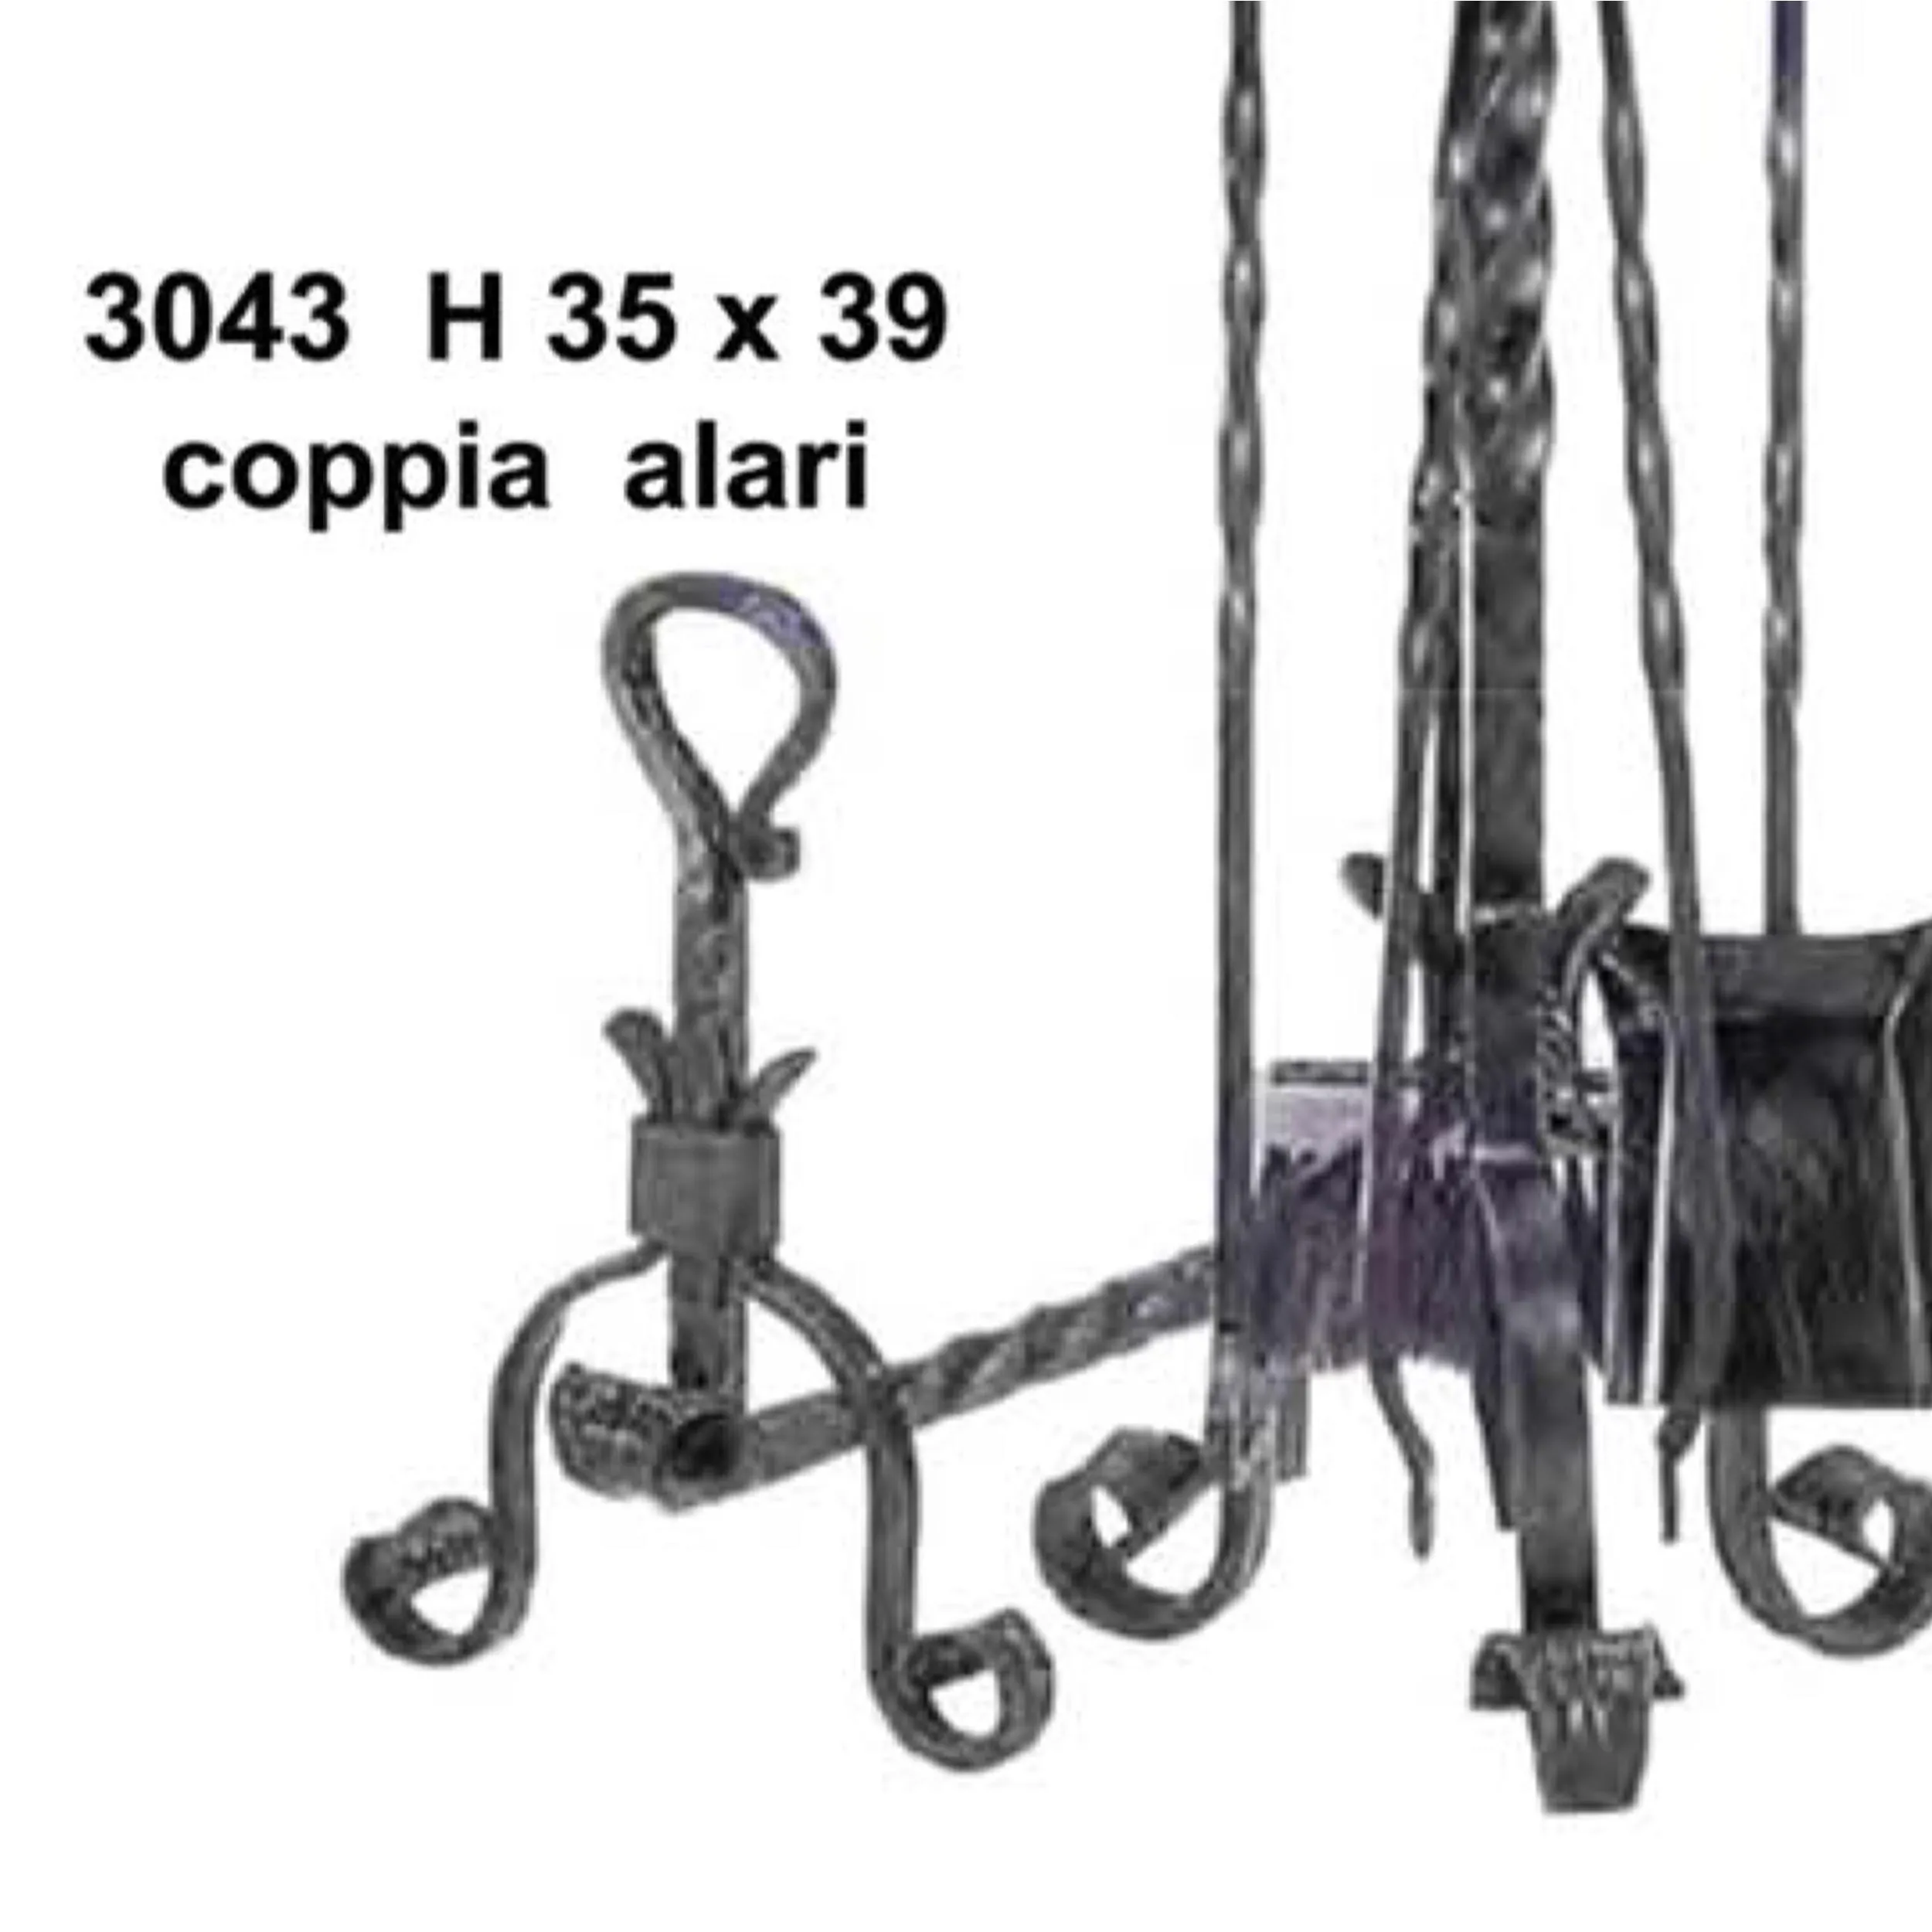 Coppia alari in ferro battuto per camino con anello 39xh35 cm lavorazione artigianale in ferro battuto colore nero